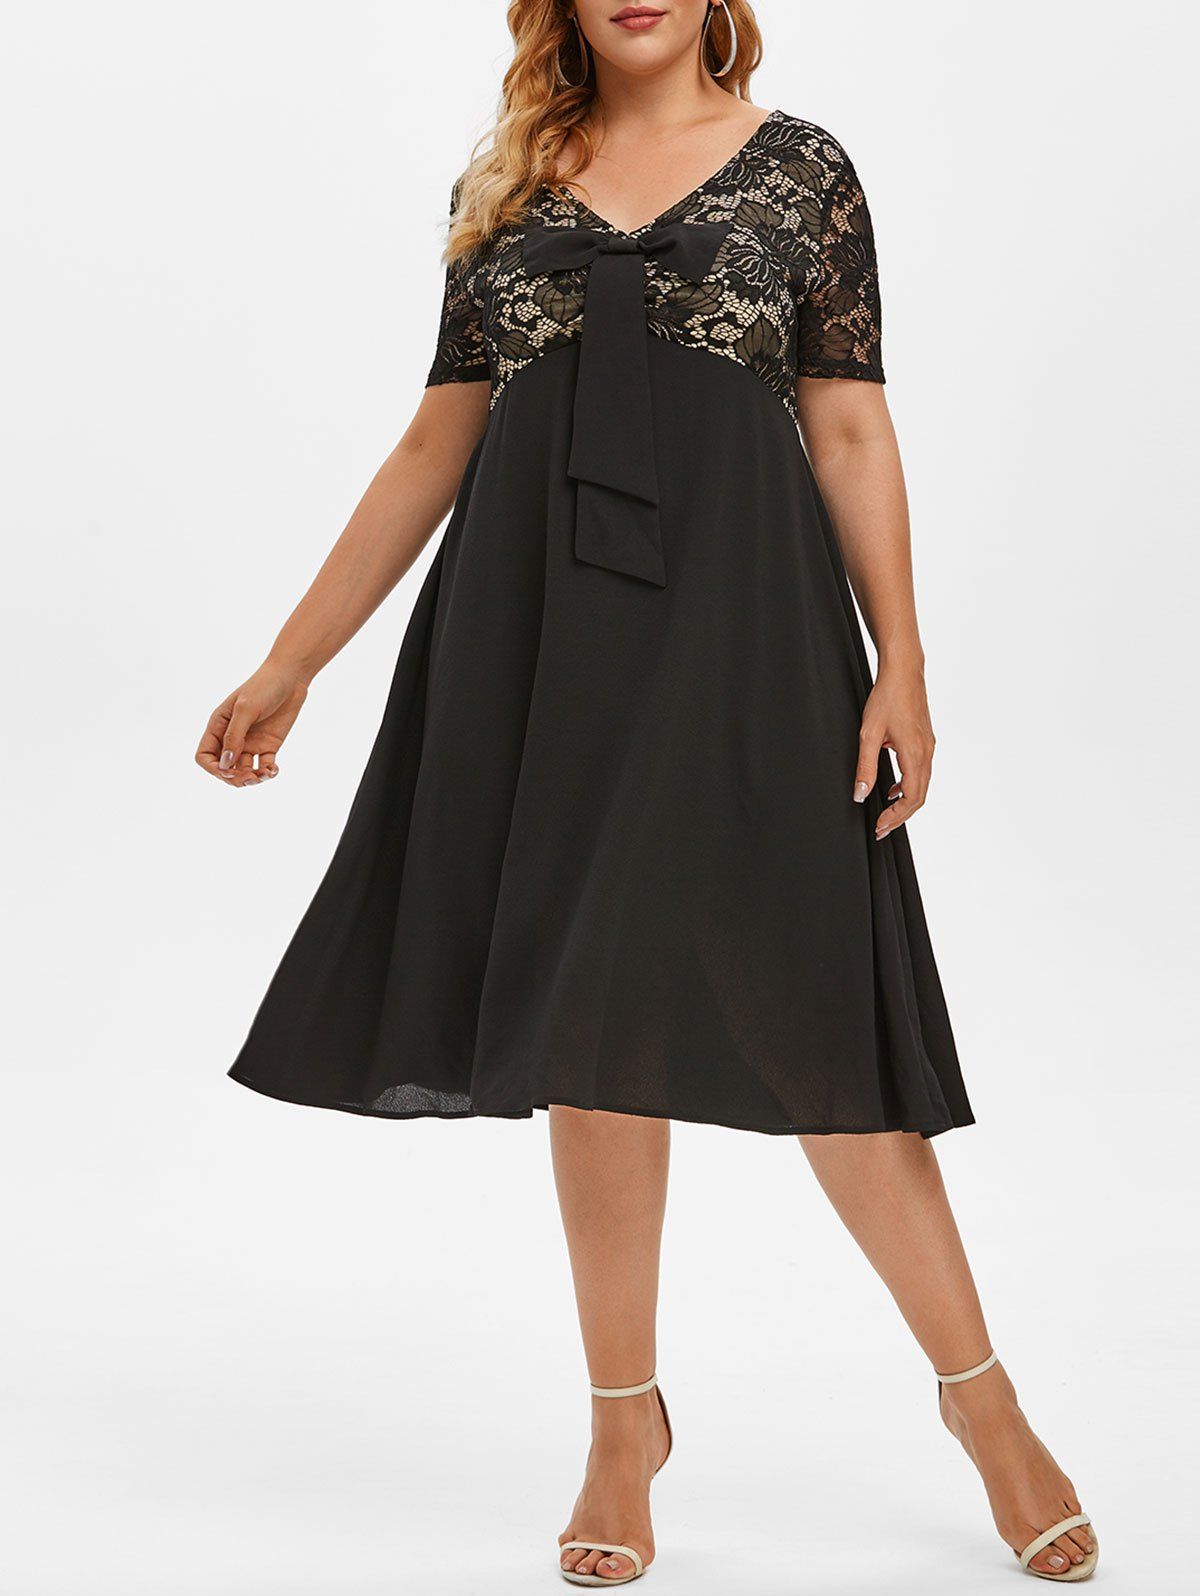 Plus Size Bowknot Lace Insert A Line Dress - BLACK L